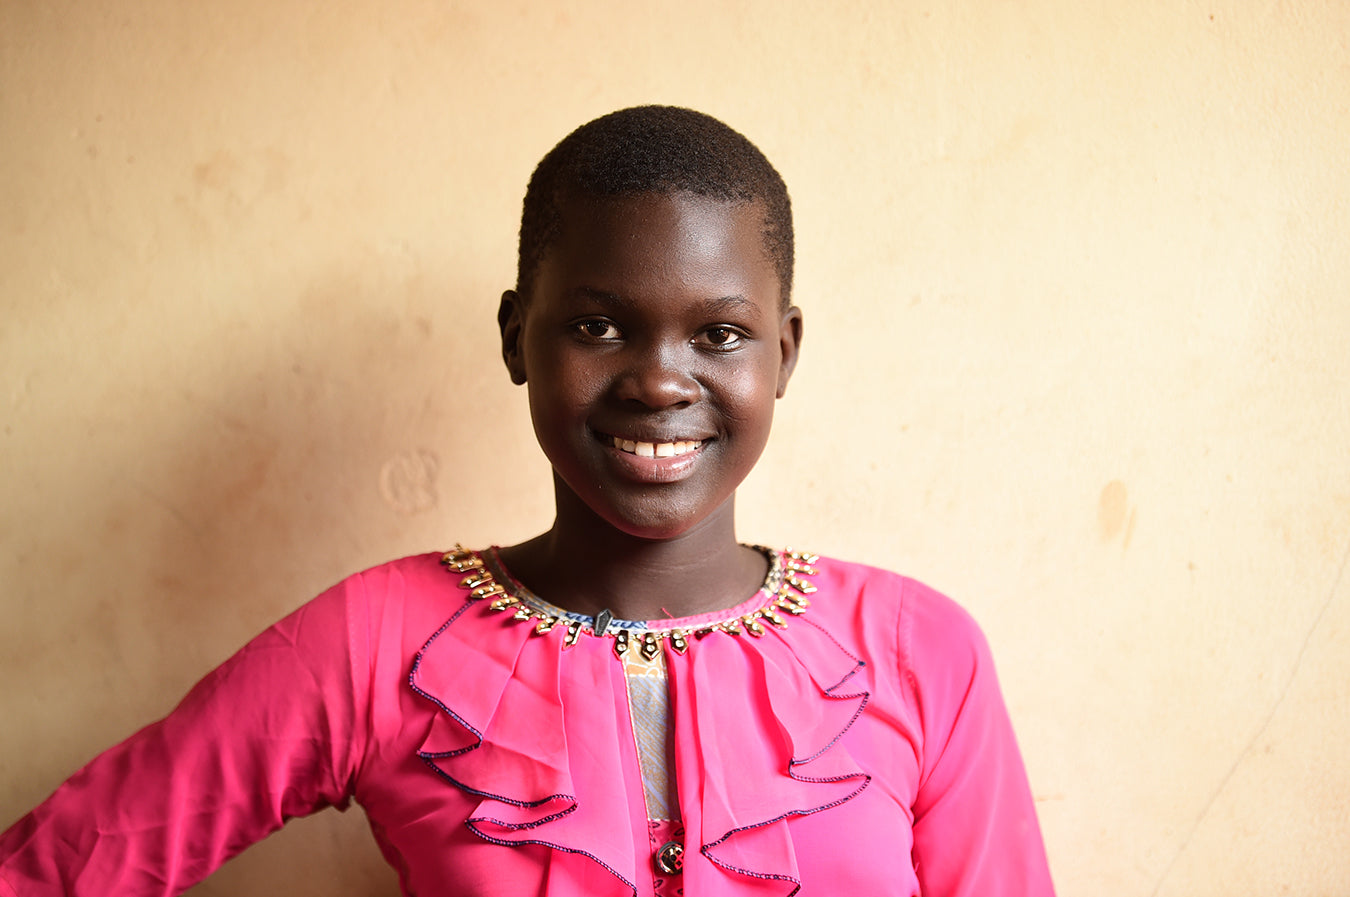 Smiling Ugandan girl with pink blouse